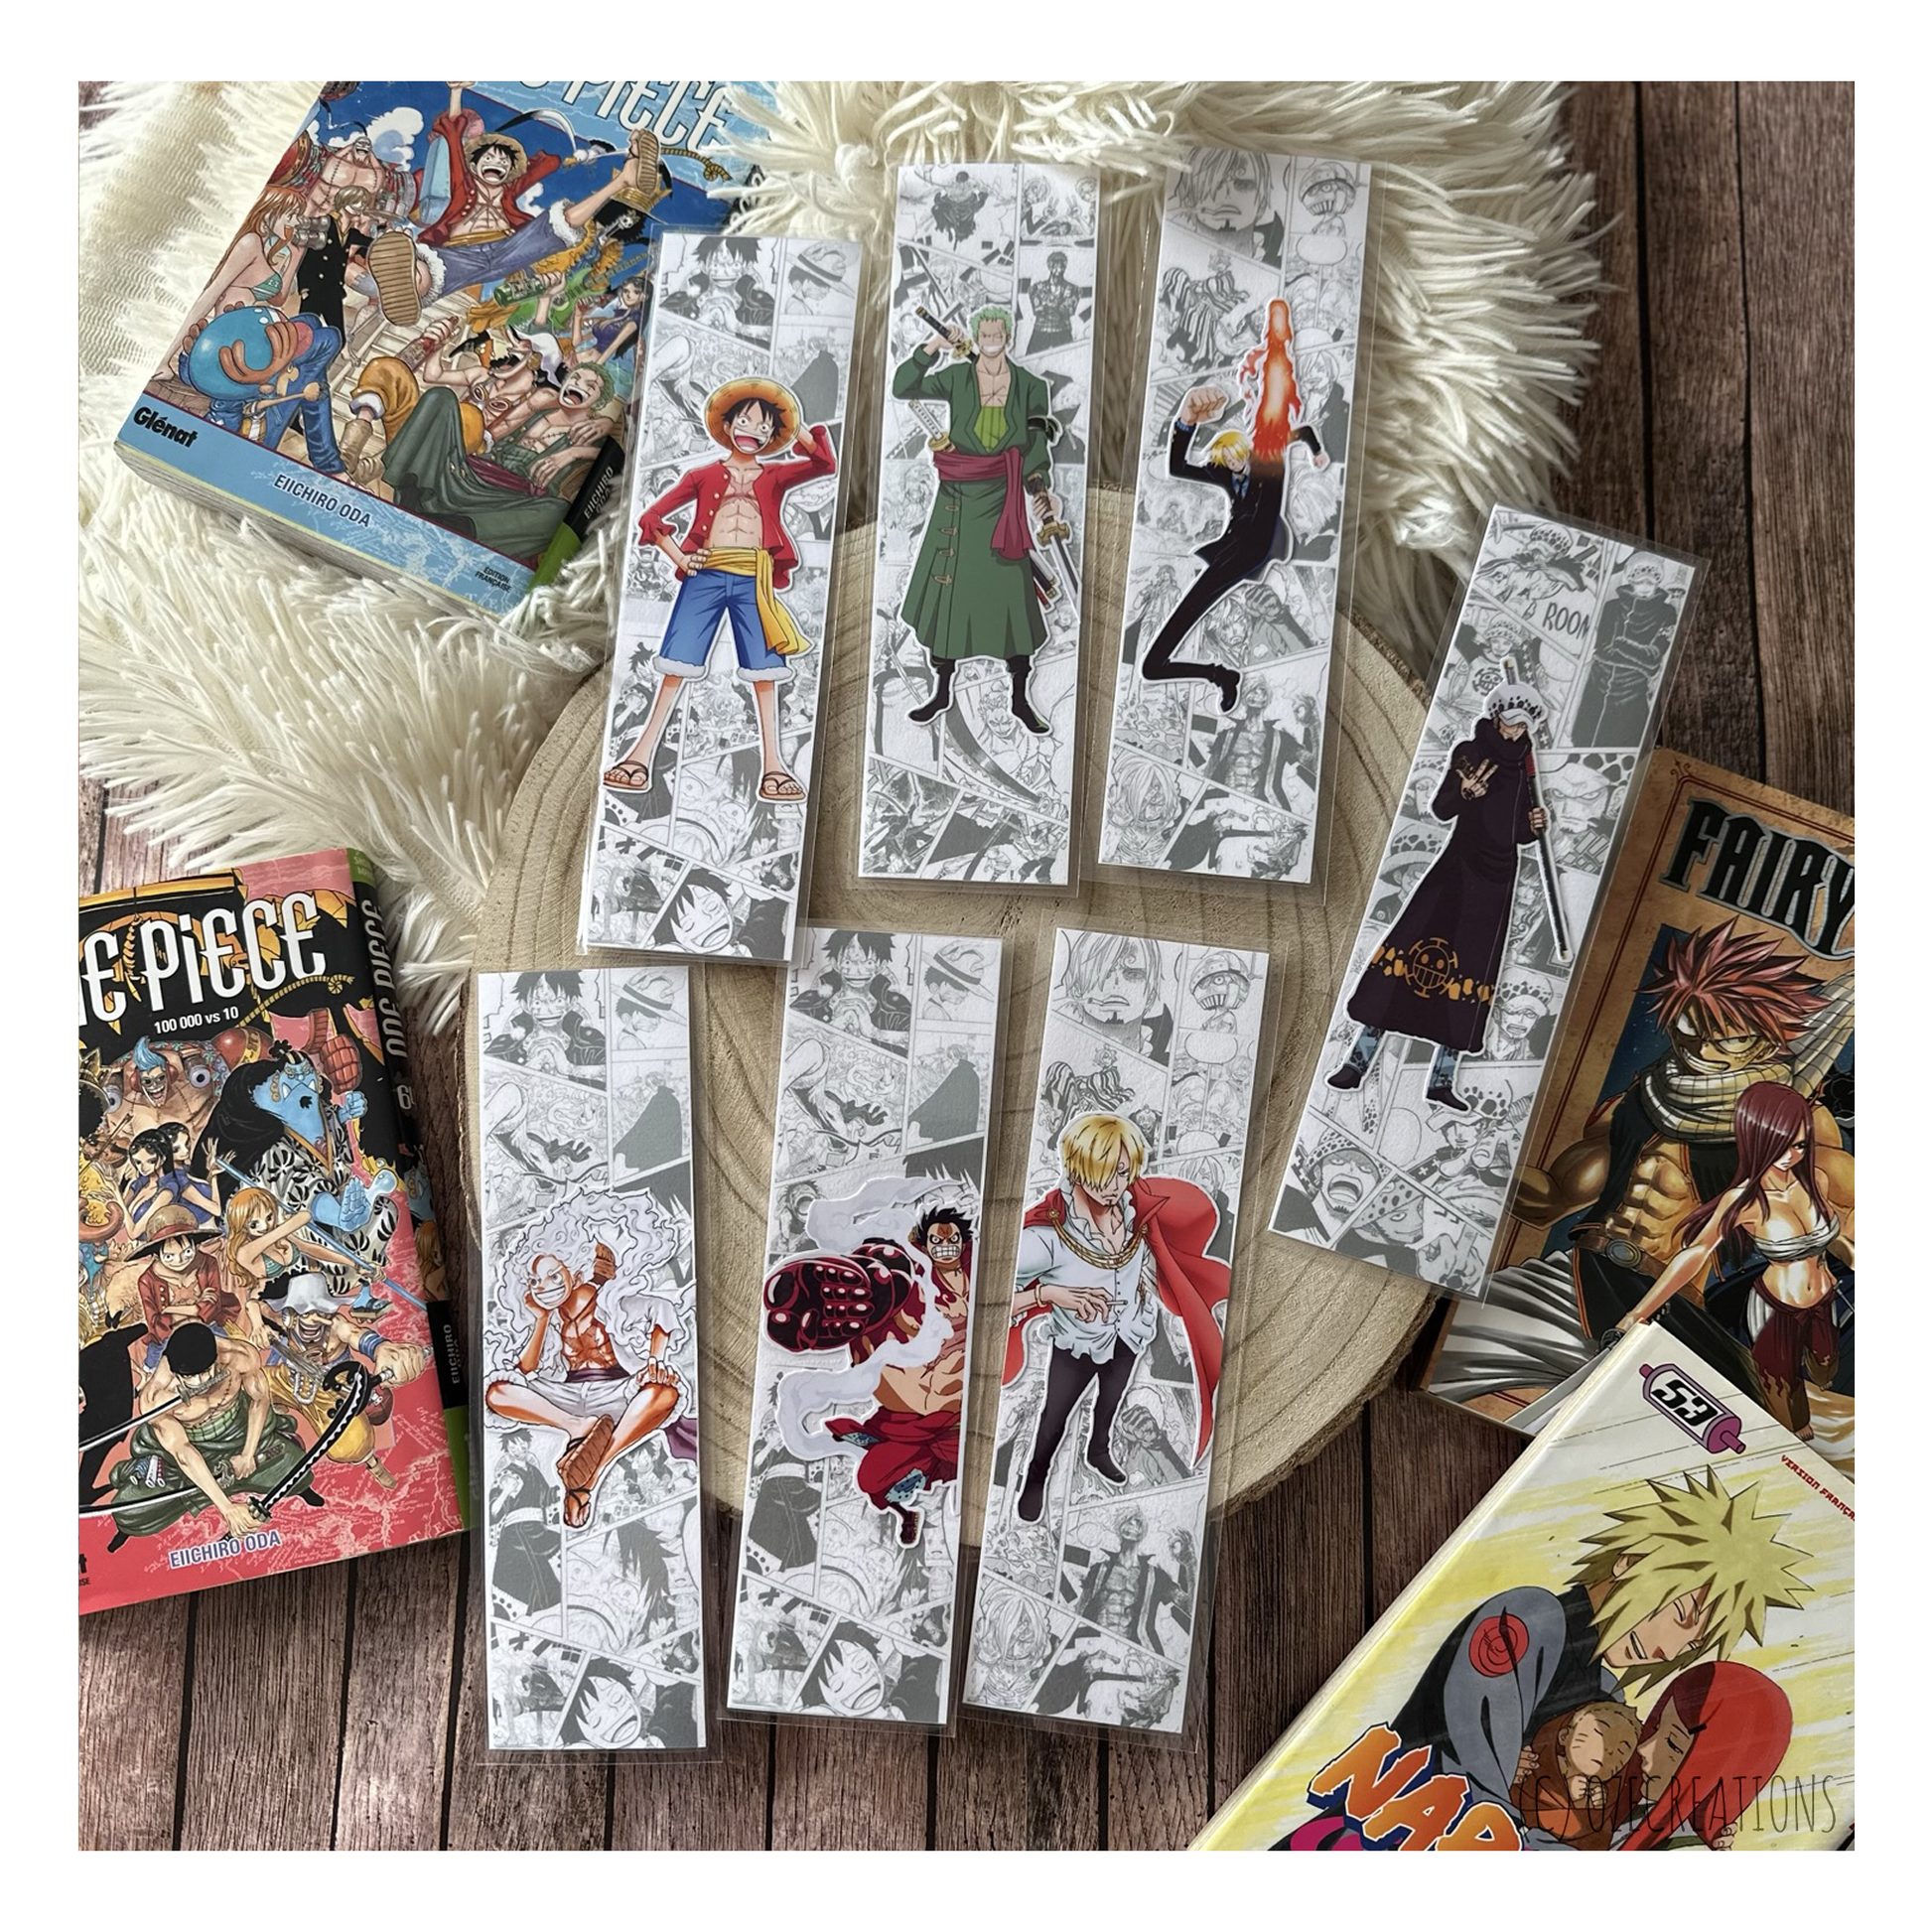 Marque-pages Manga pour faire un max de bénéfices !